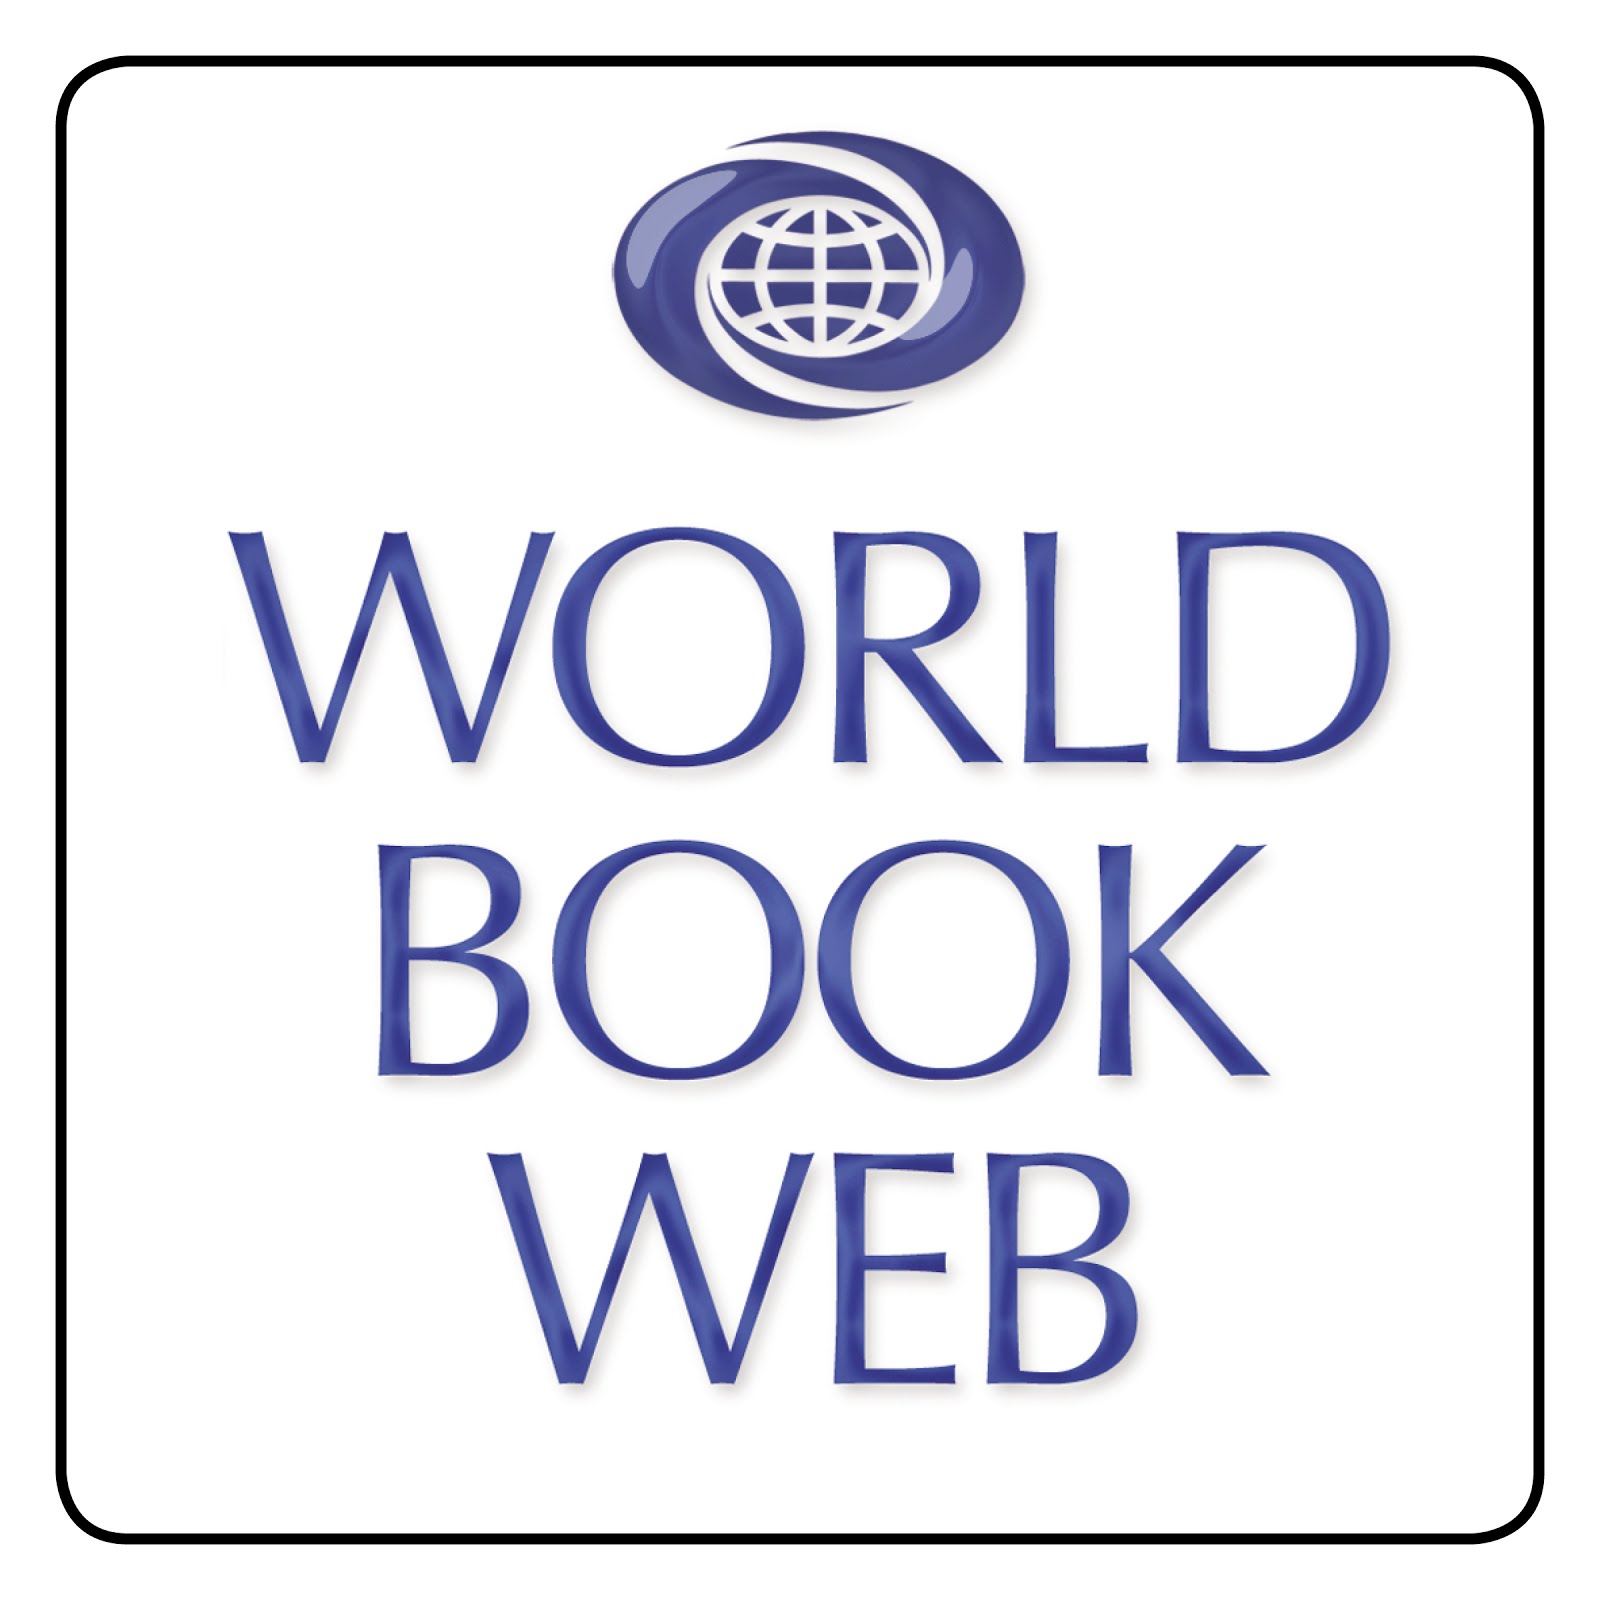 world book online